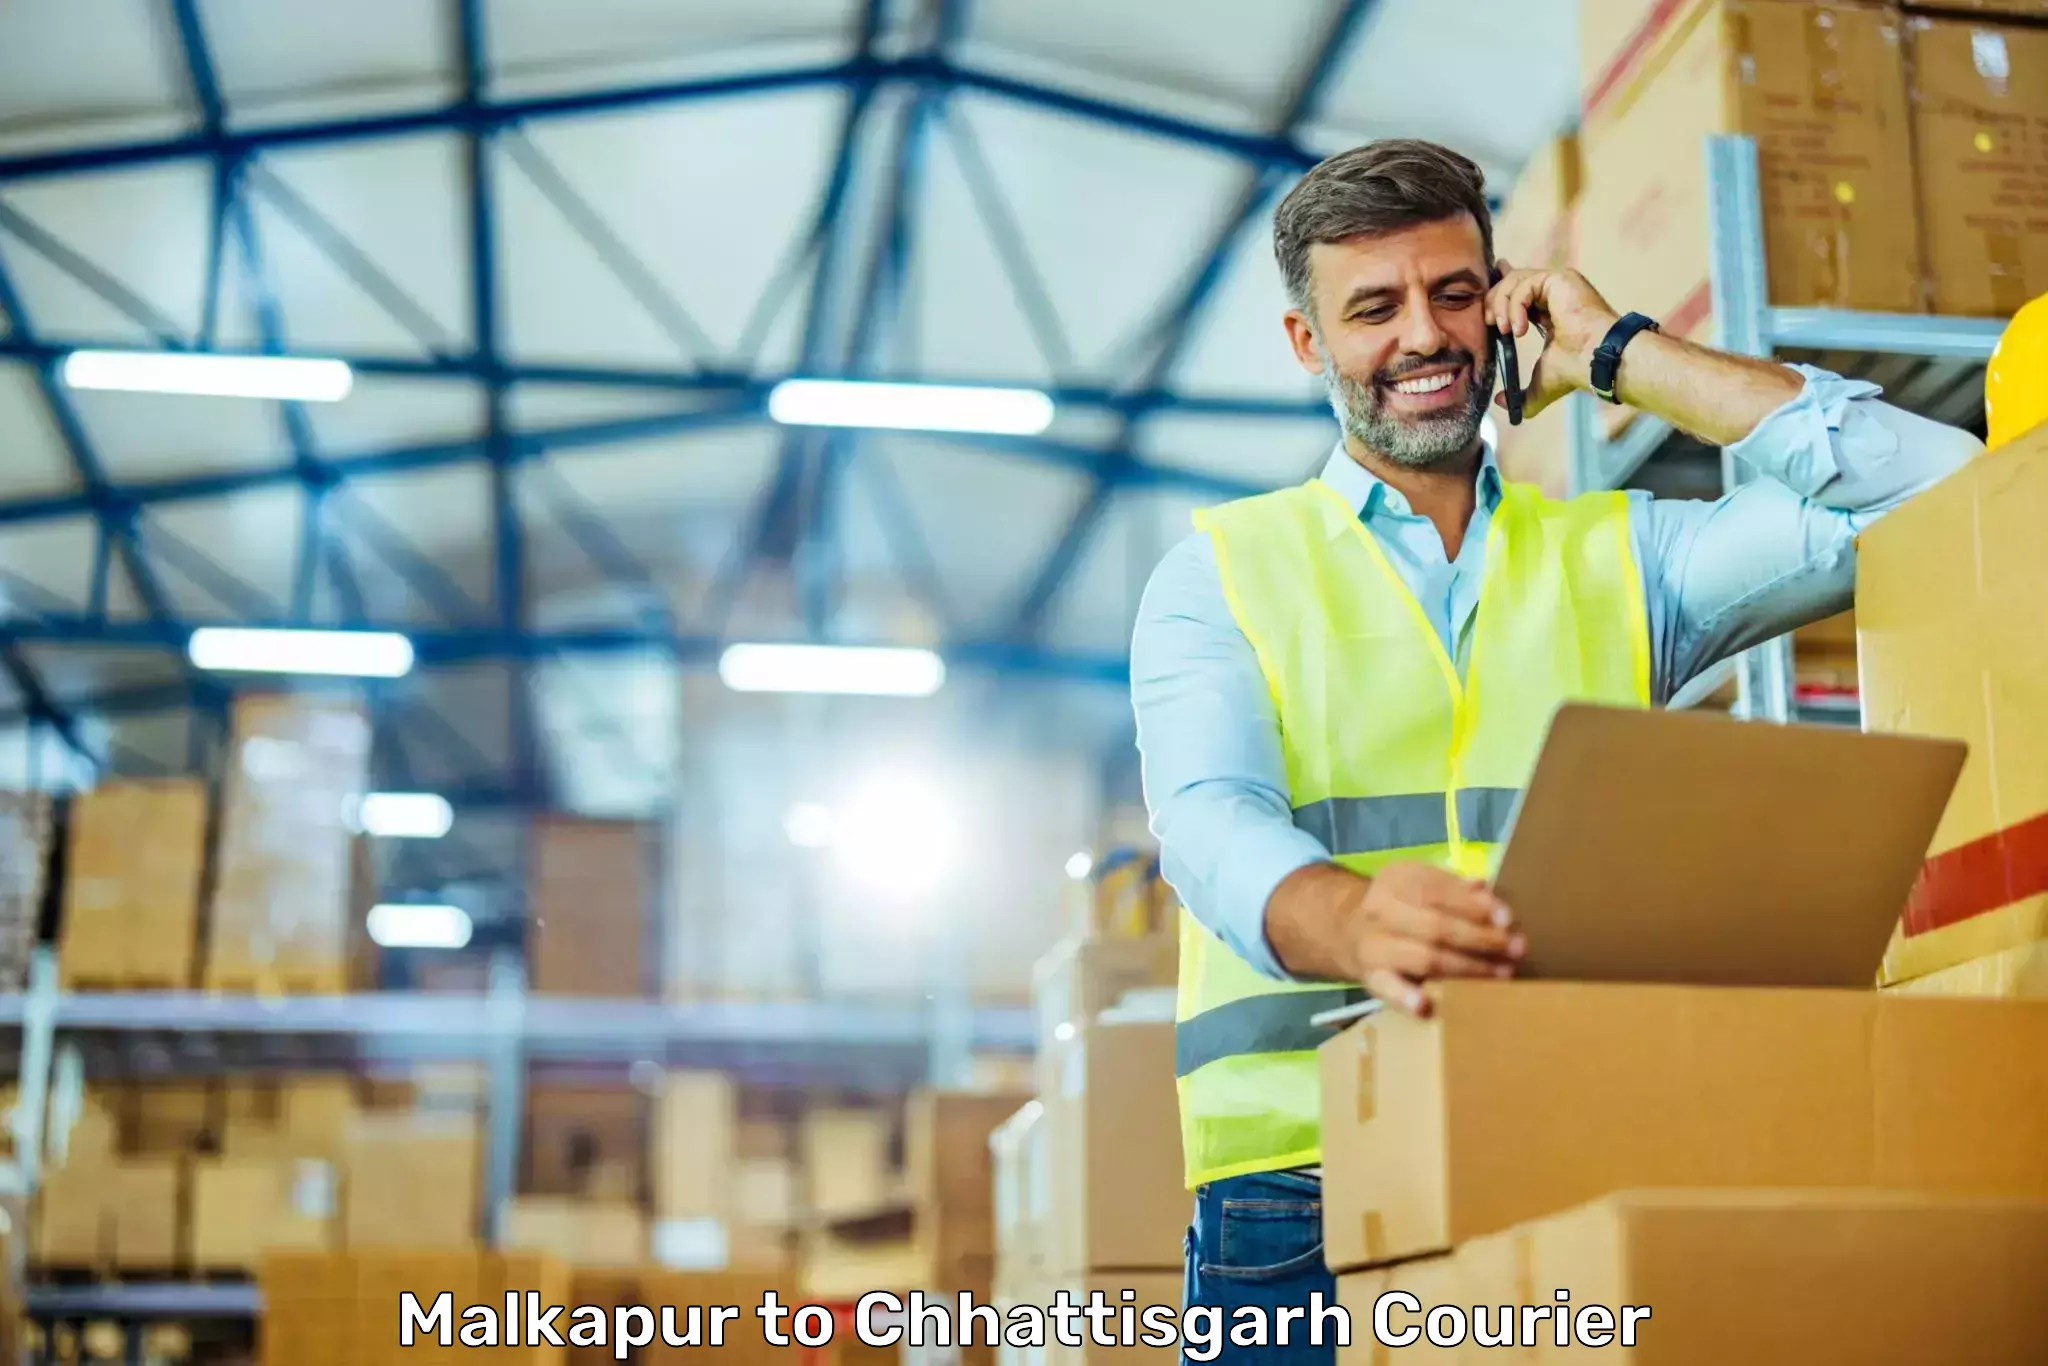 Supply chain delivery Malkapur to Bijapur Chhattisgarh